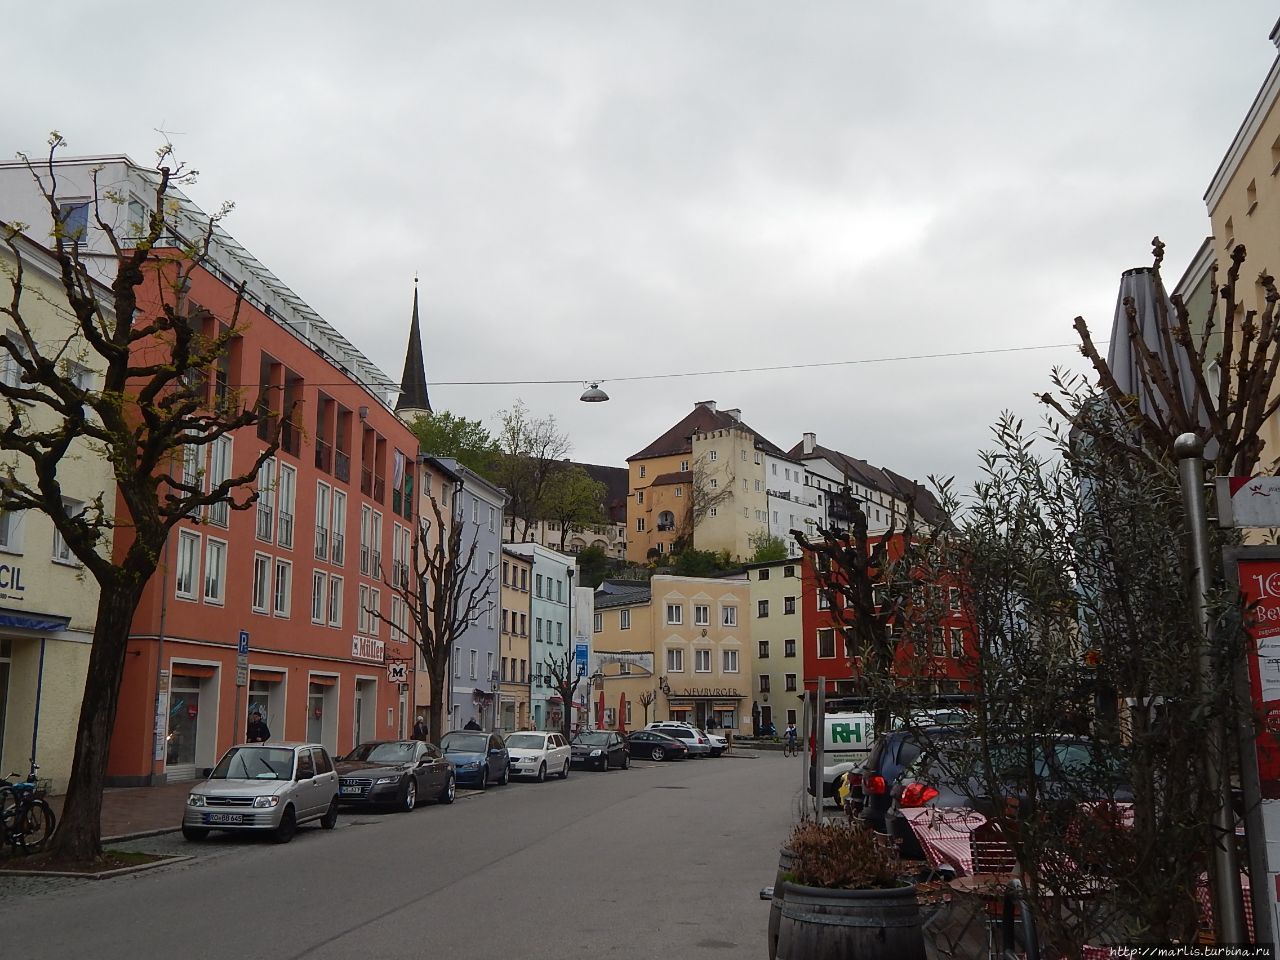 Вид на замок с одной из площадей города (Herrengasse)